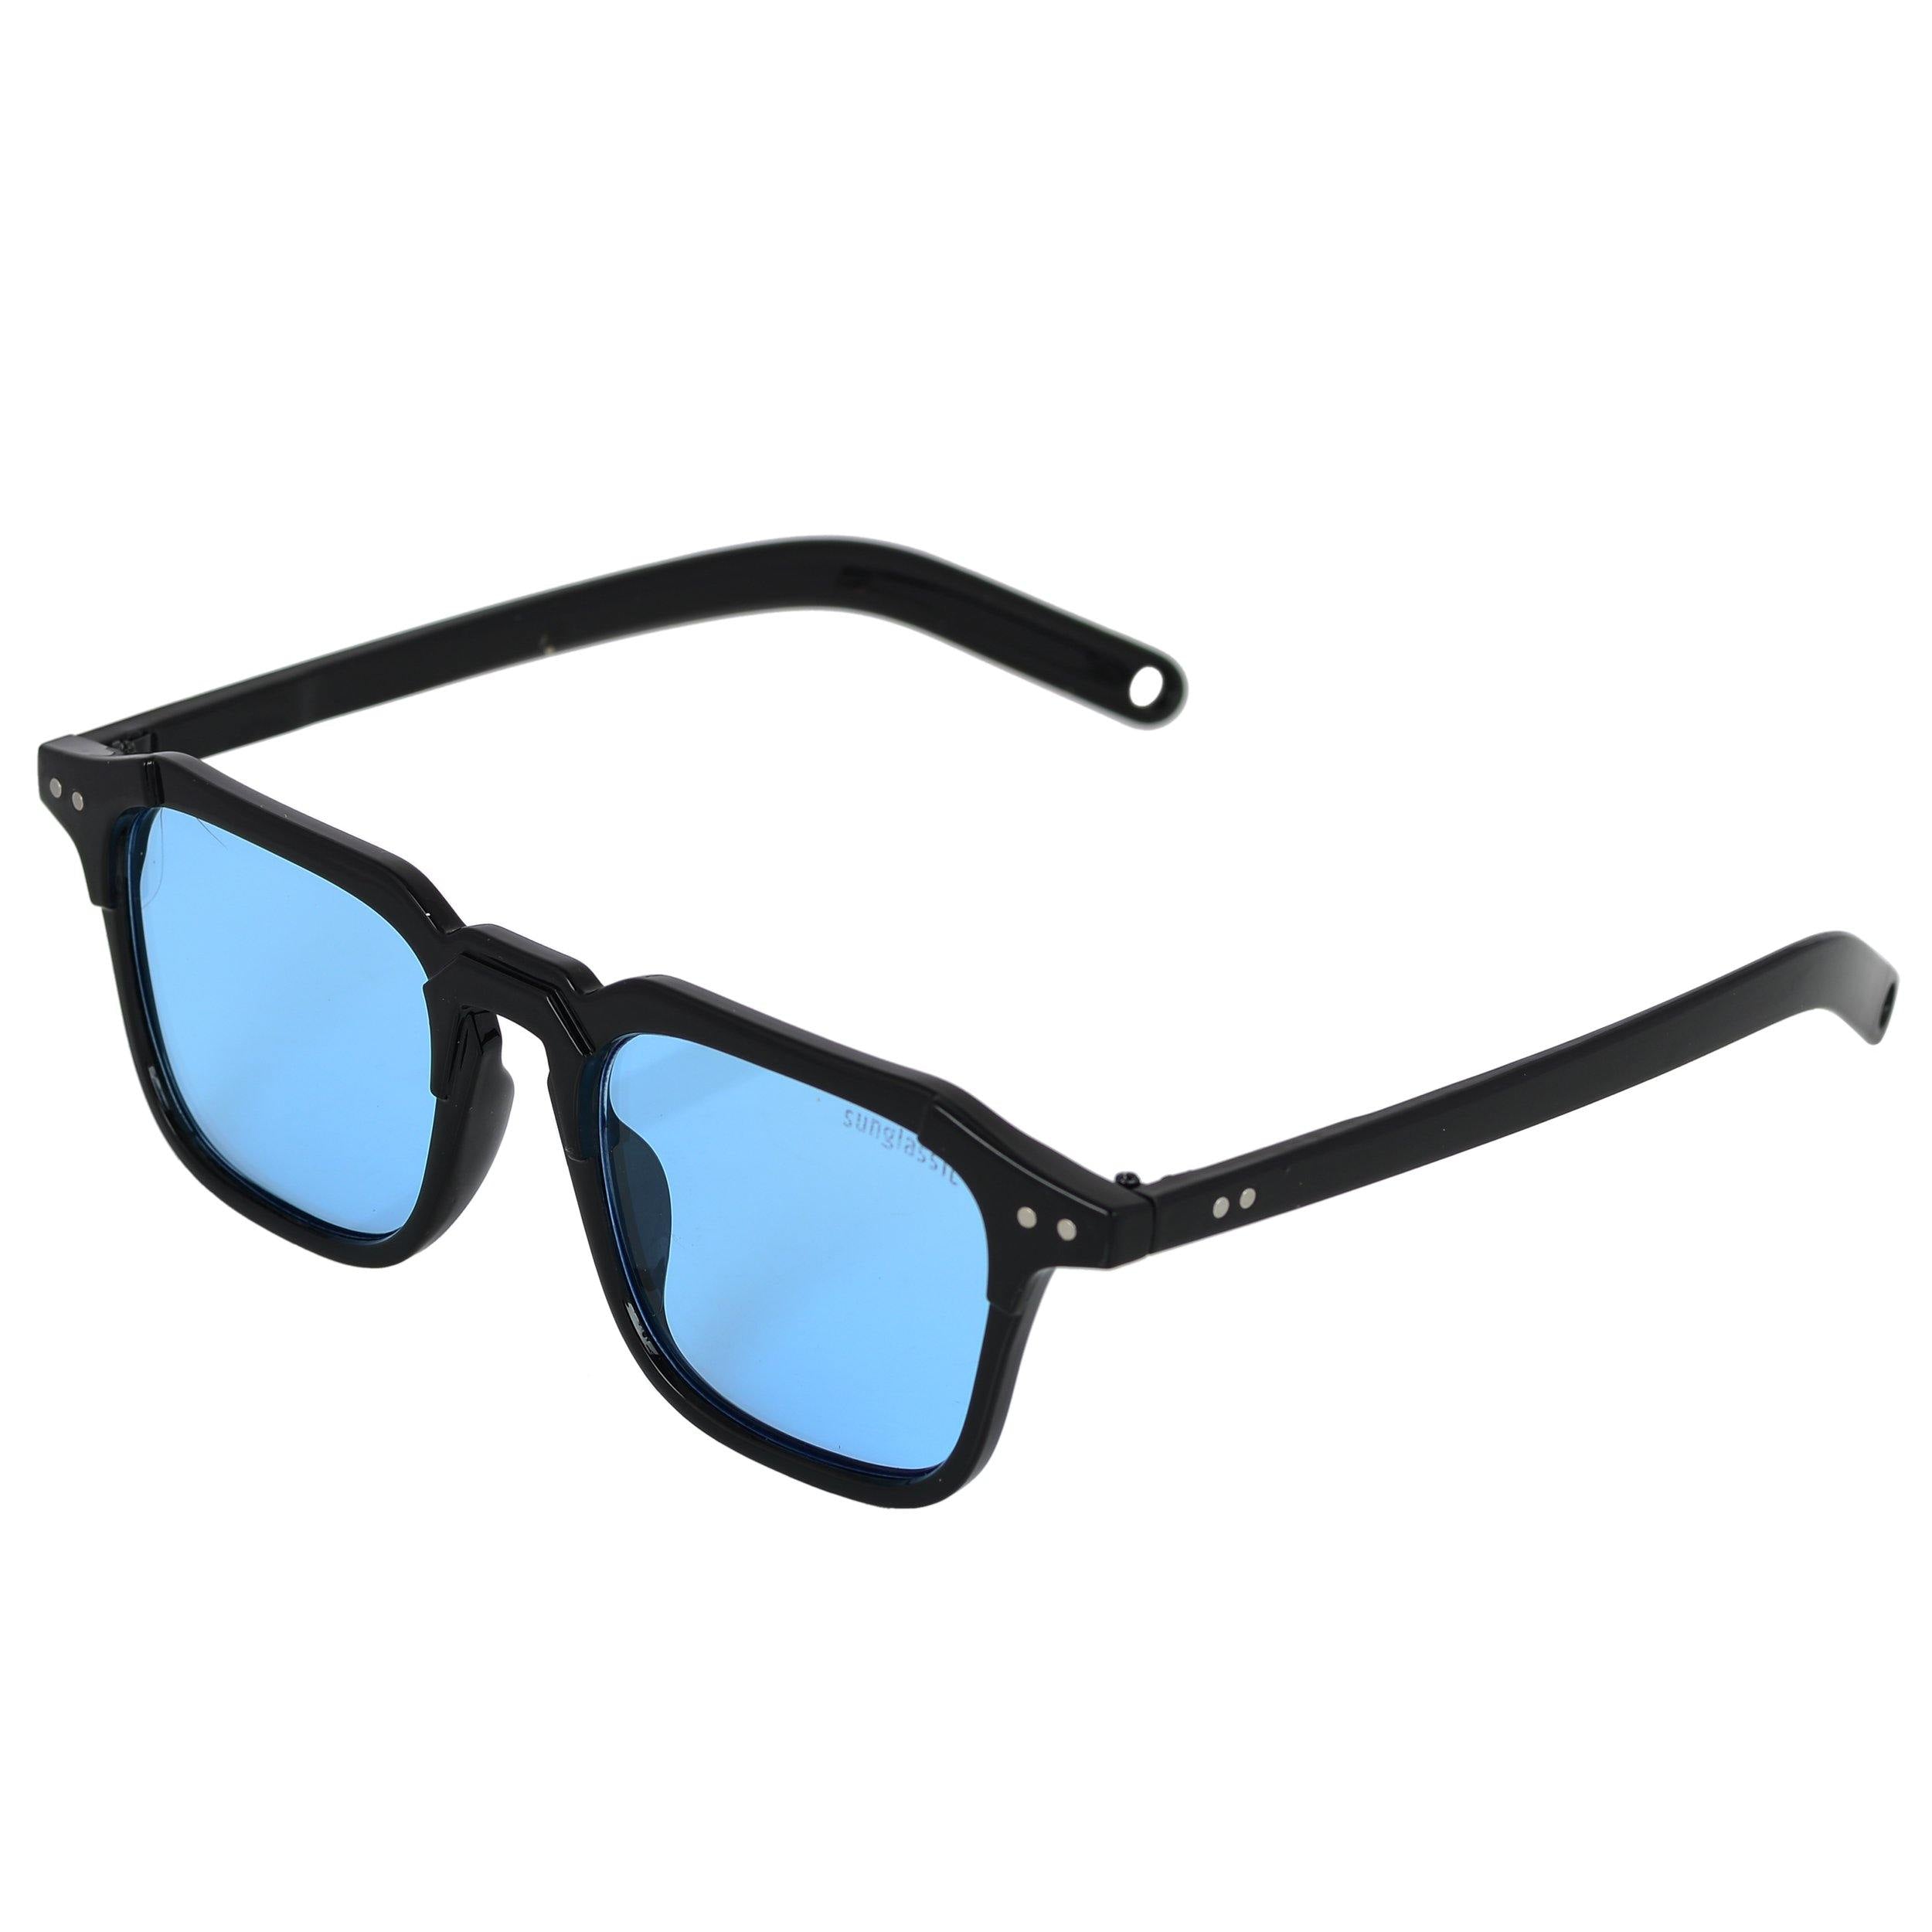 Kingsman Black Blue Square Sunglasses